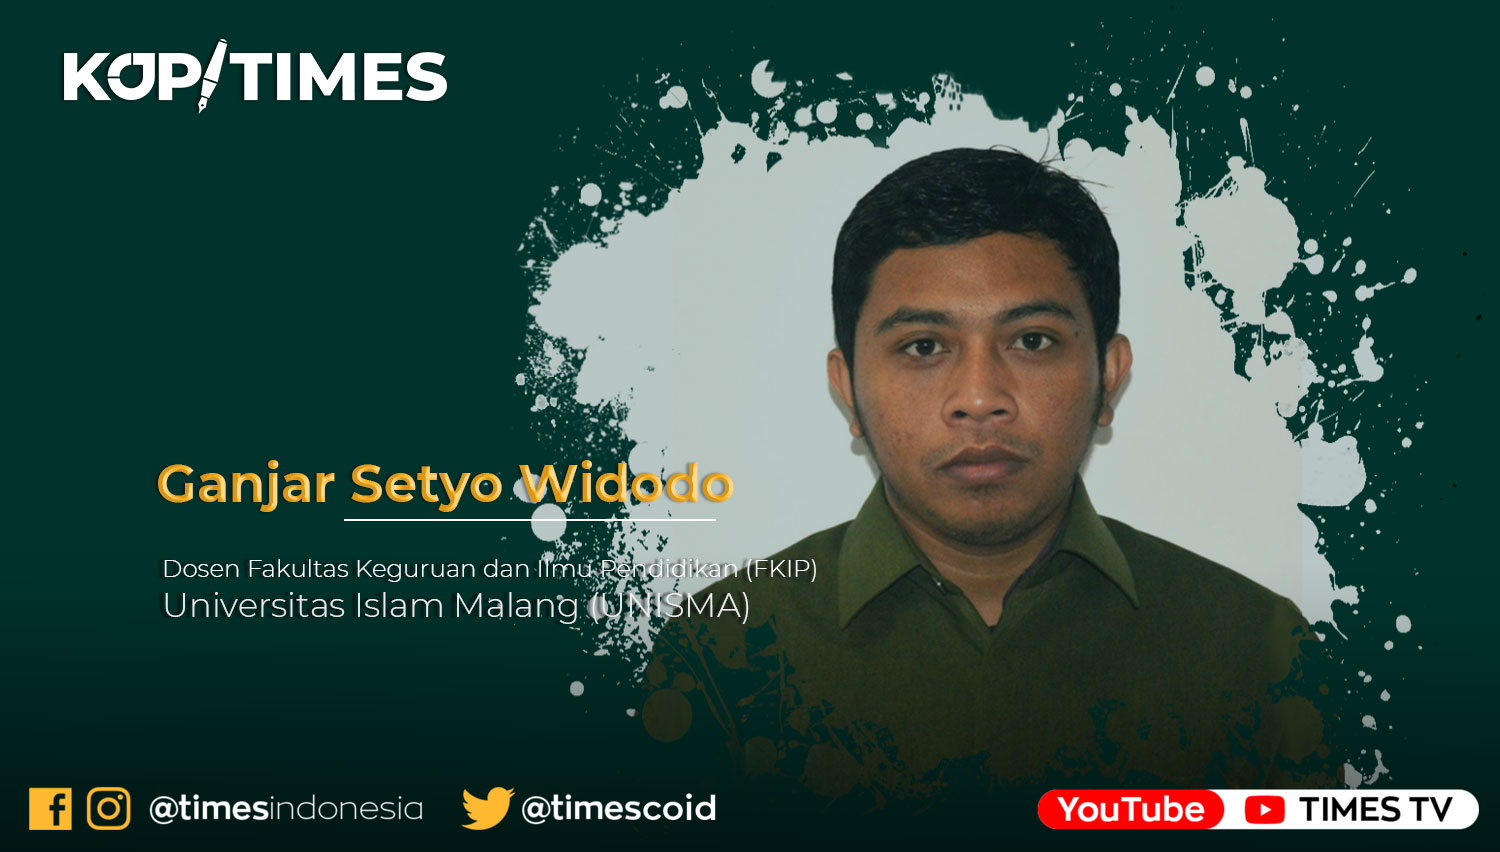 Ganjar Setyo Widodo, Dosen Fakultas Keguruan dan Ilmu Pendidikan (FKIP) Universitas Islam Malang (UNISMA).